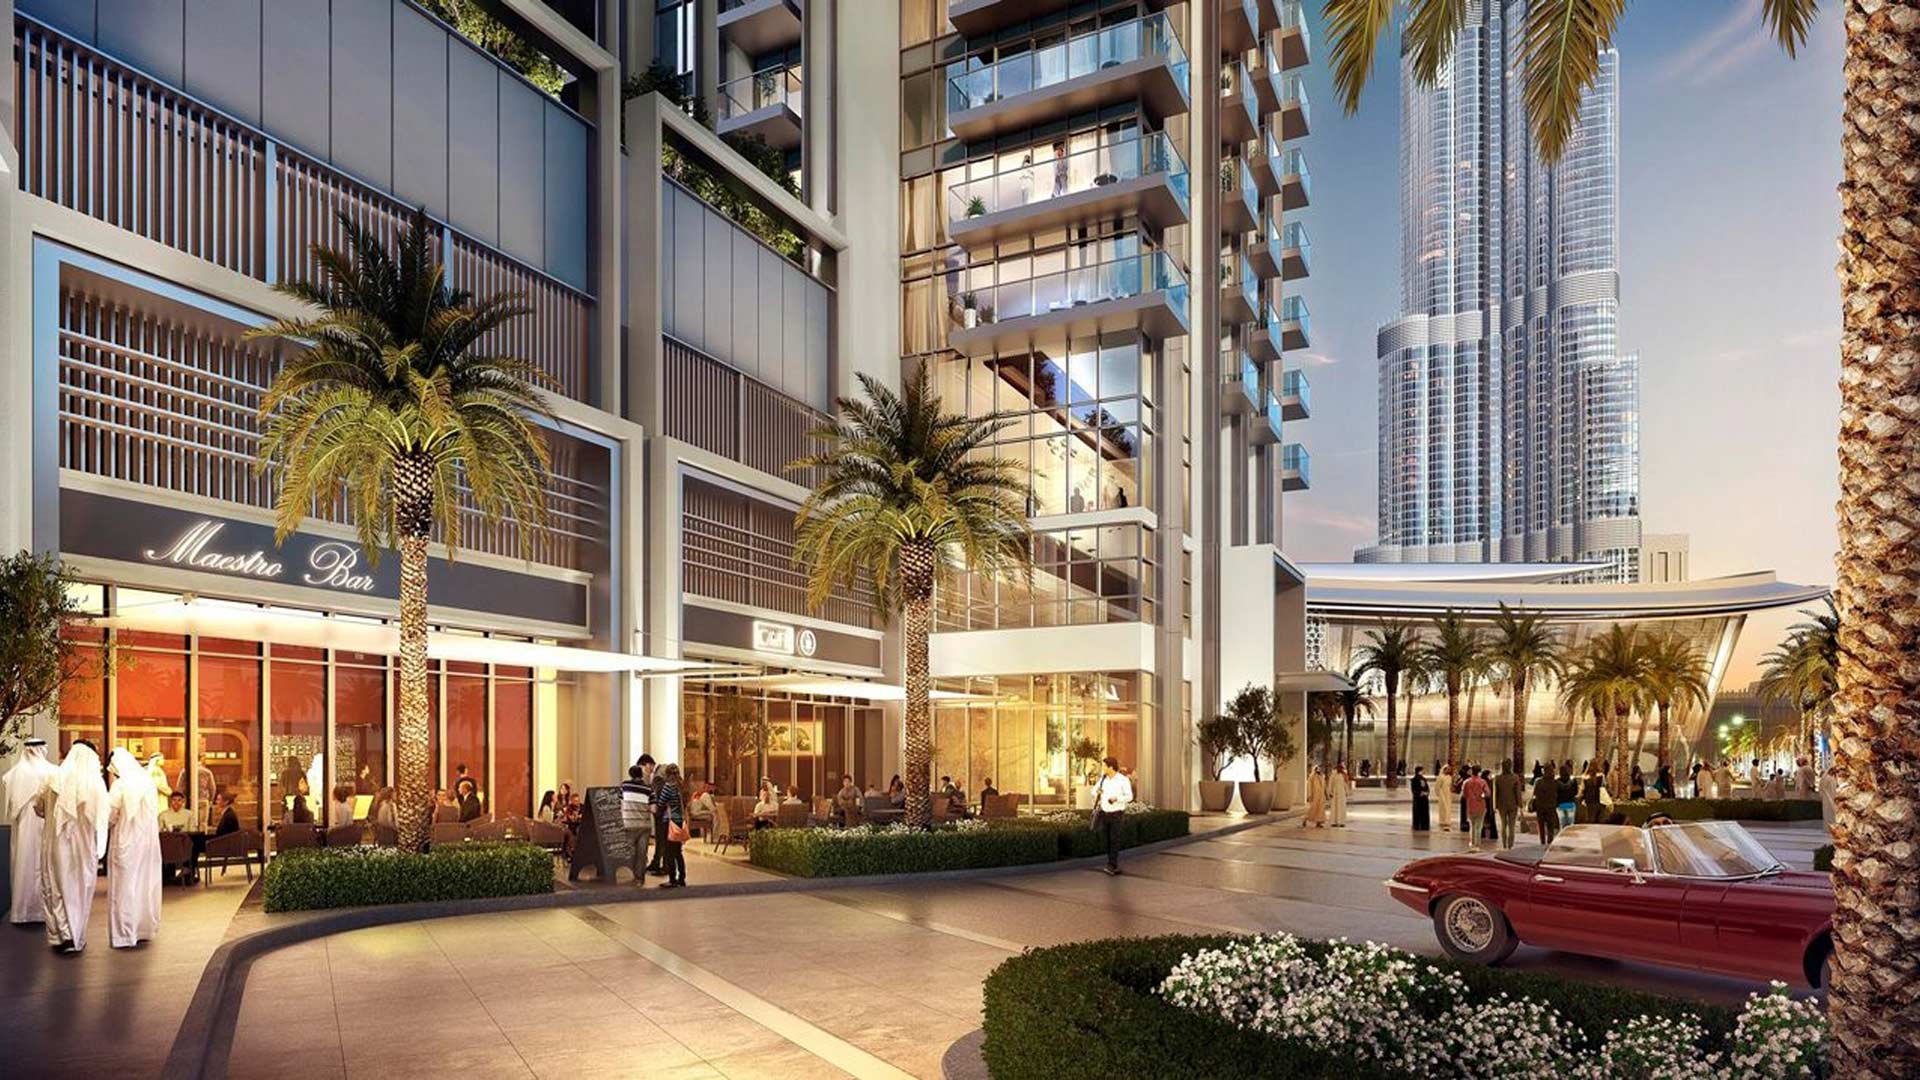 ST.REGIS RESIDENCES by Emaar Properties in Downtown Dubai, Dubai, UAE - 7